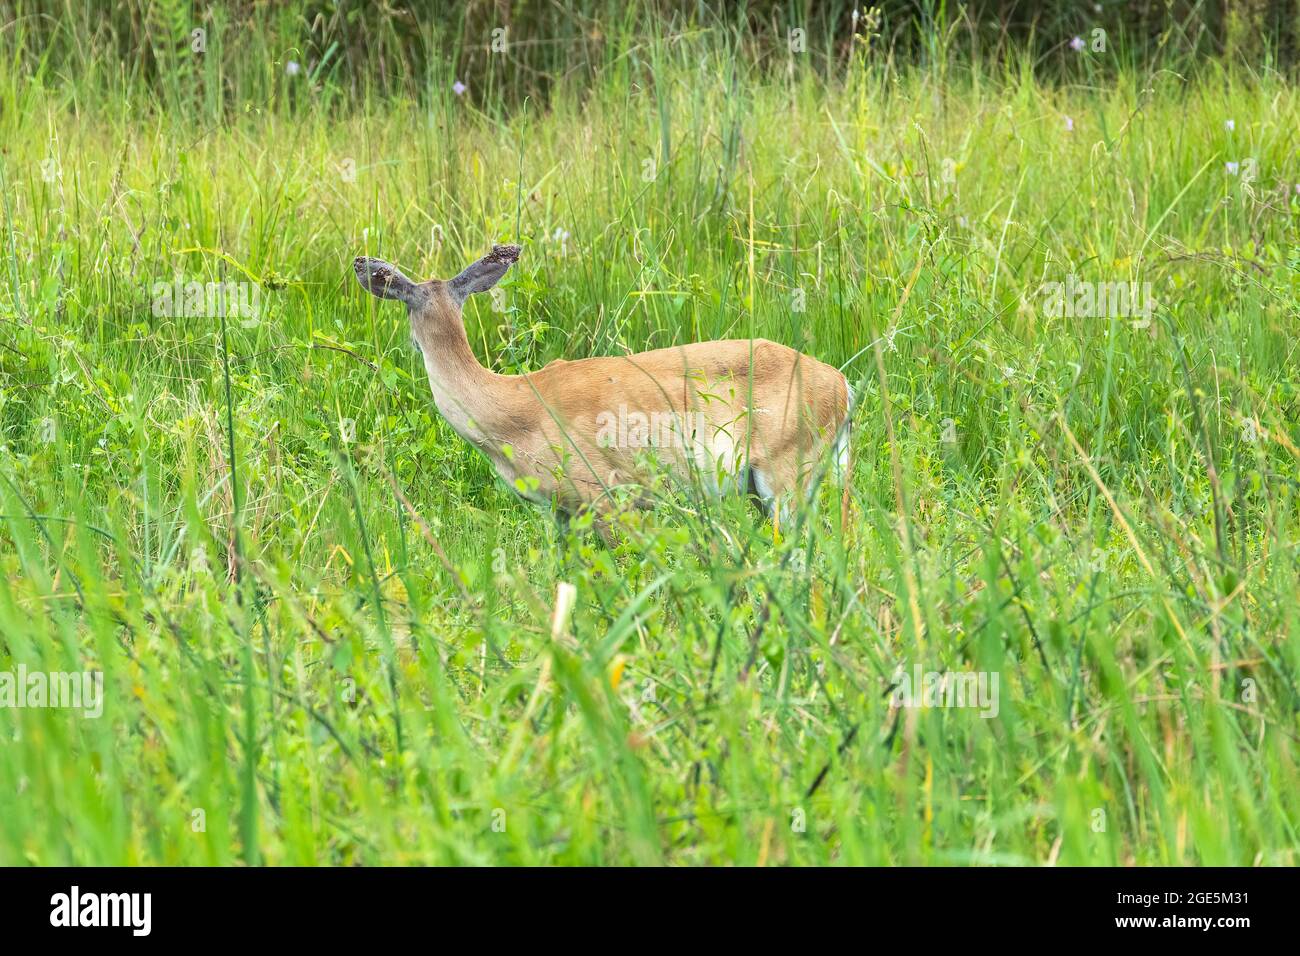 Una femmina cervi dalla coda bianca in piedi in erba con chiari segni di crescita sulle orecchie. Foto Stock